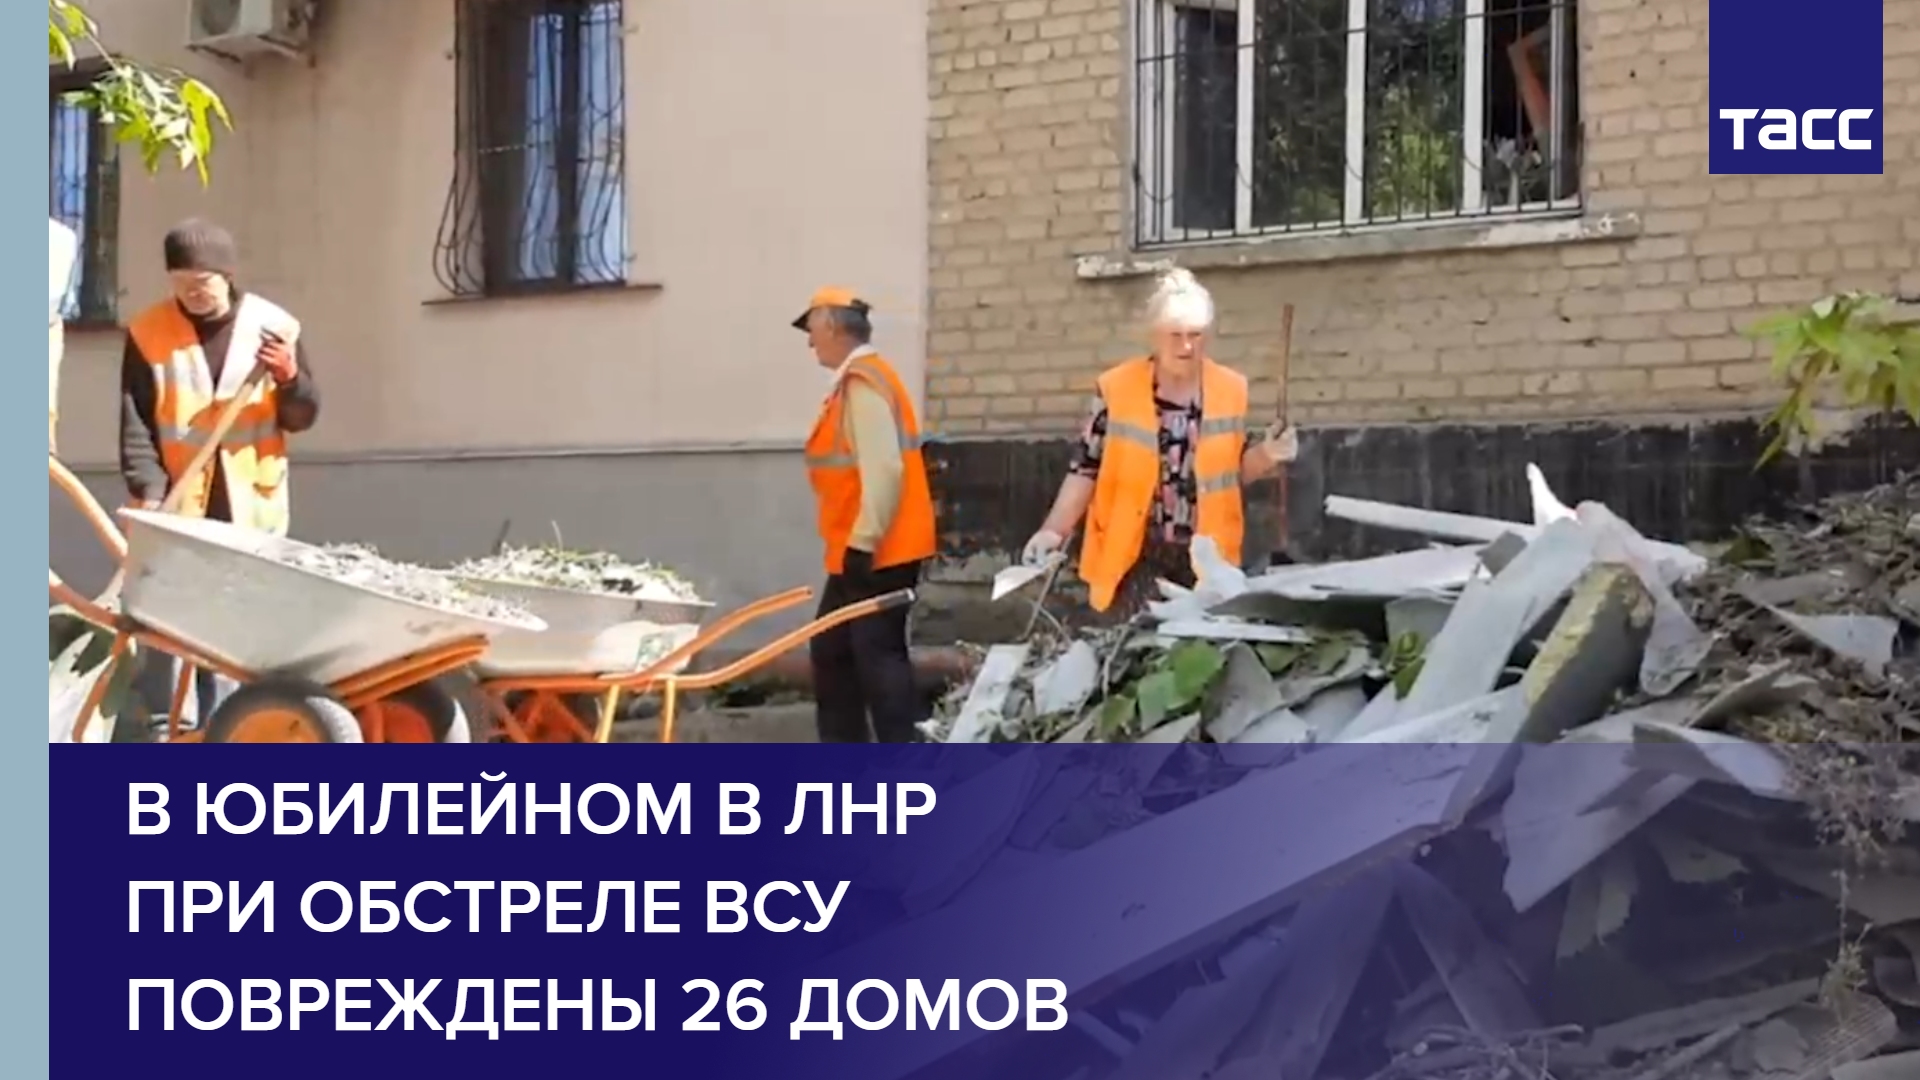 В Юбилейном в ЛНР при обстреле ВСУ повреждены 26 домов